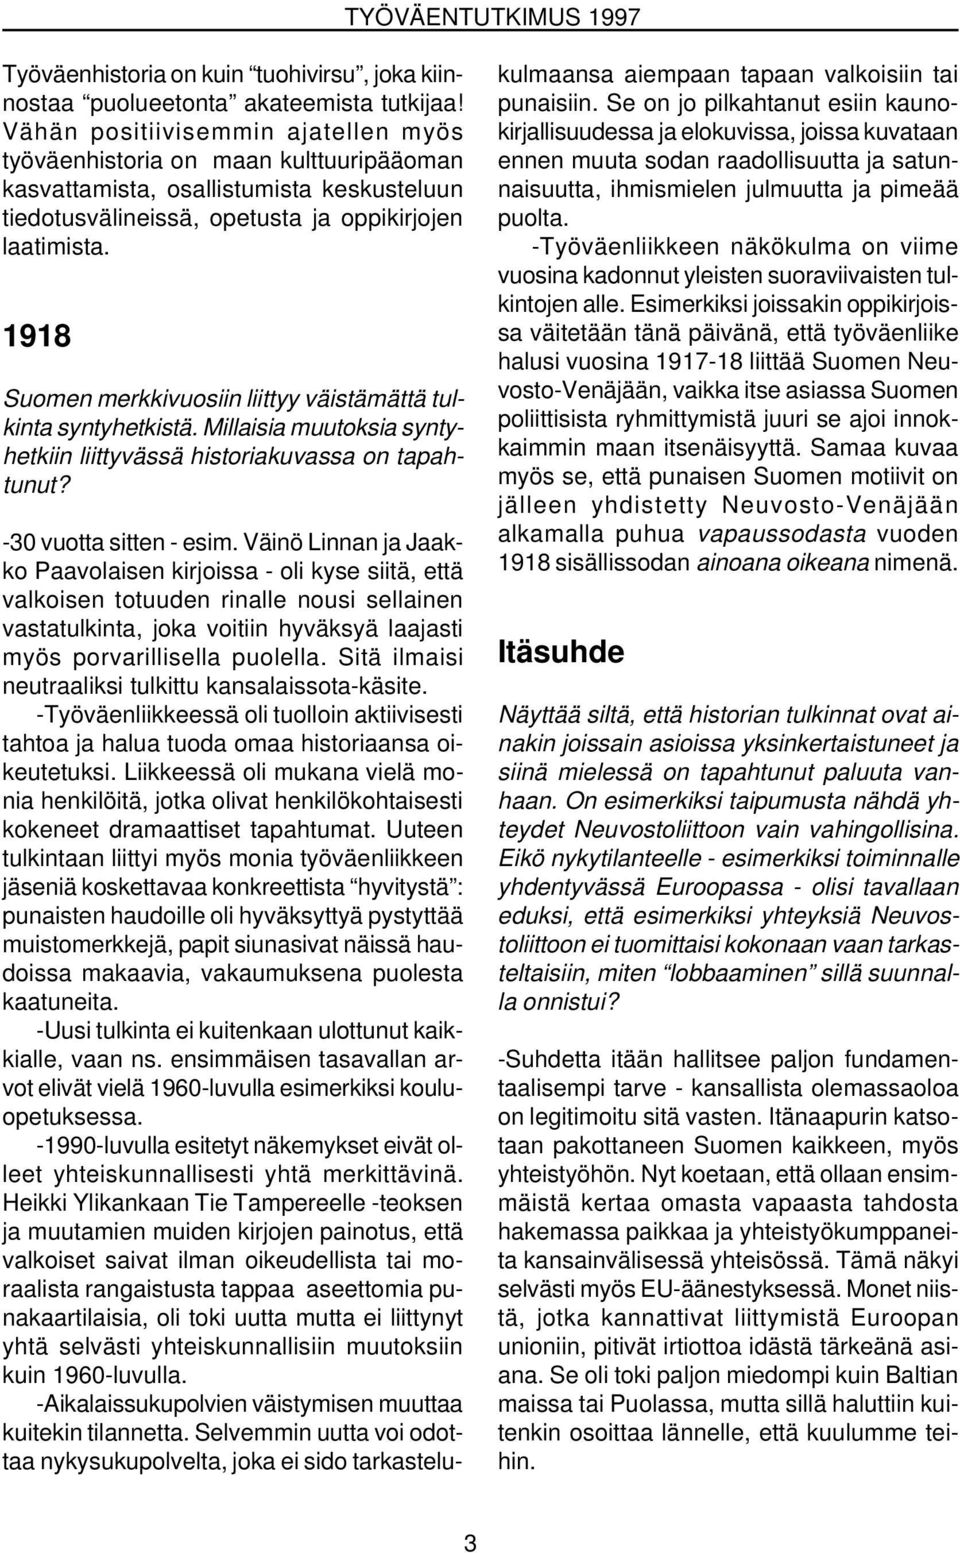 1918 Suomen merkkivuosiin liittyy väistämättä tulkinta syntyhetkistä. Millaisia muutoksia syntyhetkiin liittyvässä historiakuvassa on tapahtunut? -30 vuotta sitten - esim.